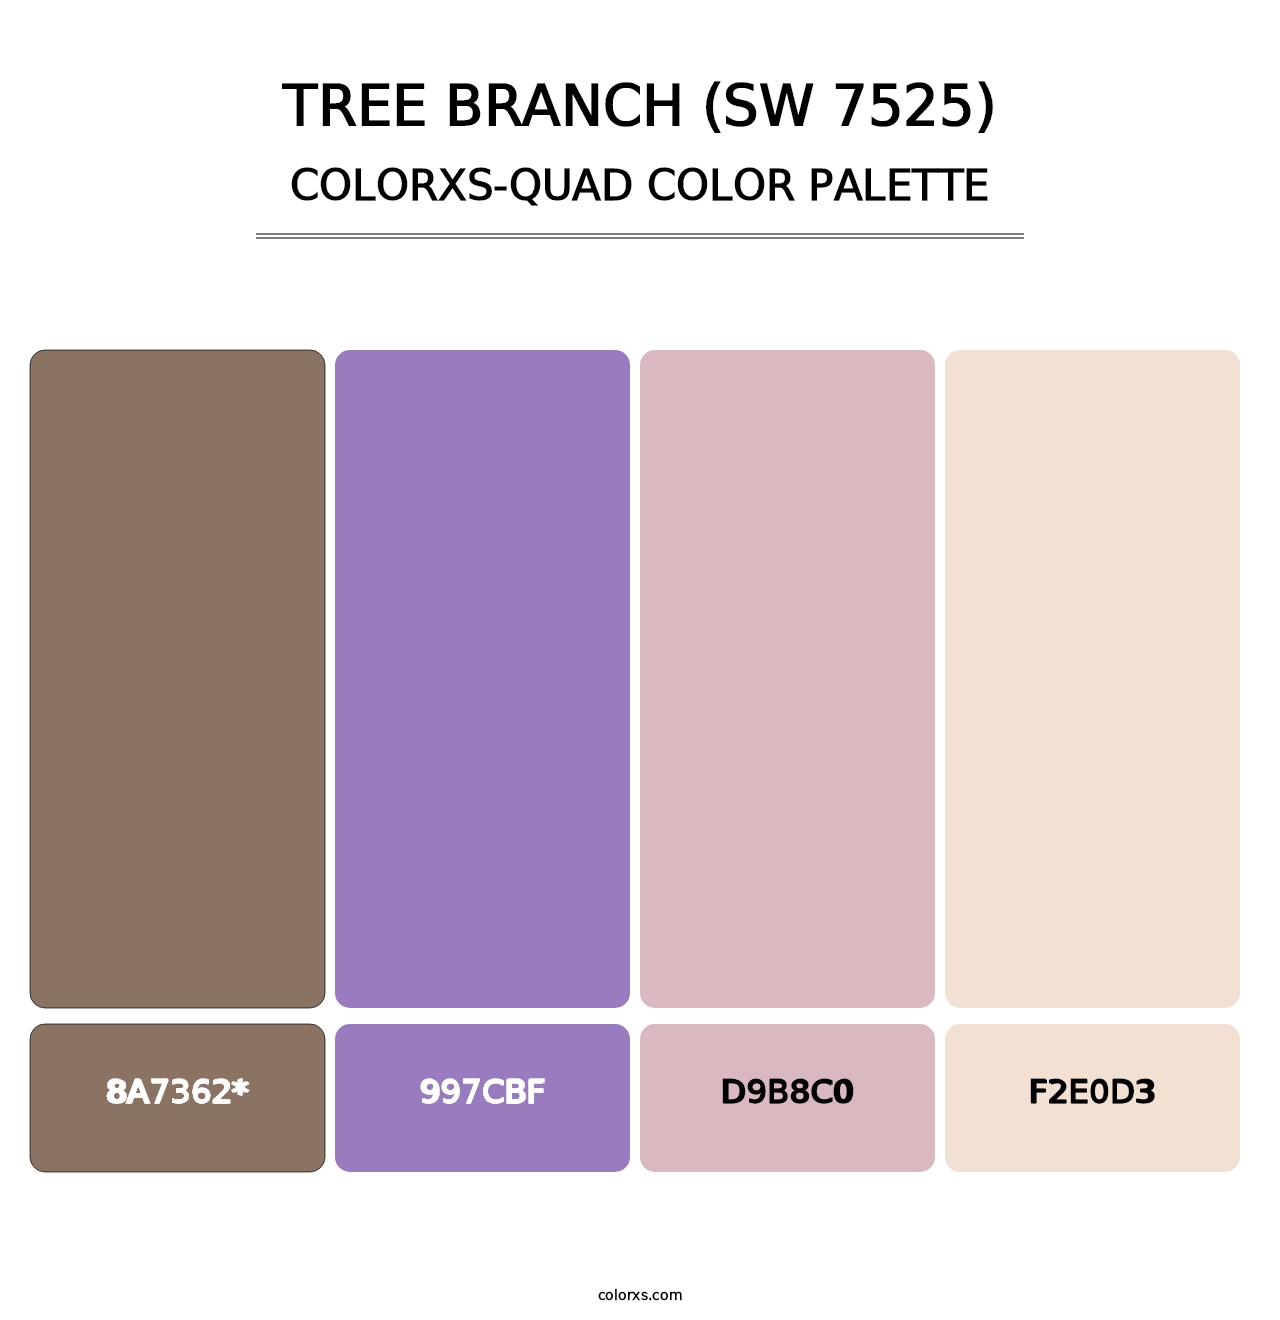 Tree Branch (SW 7525) - Colorxs Quad Palette